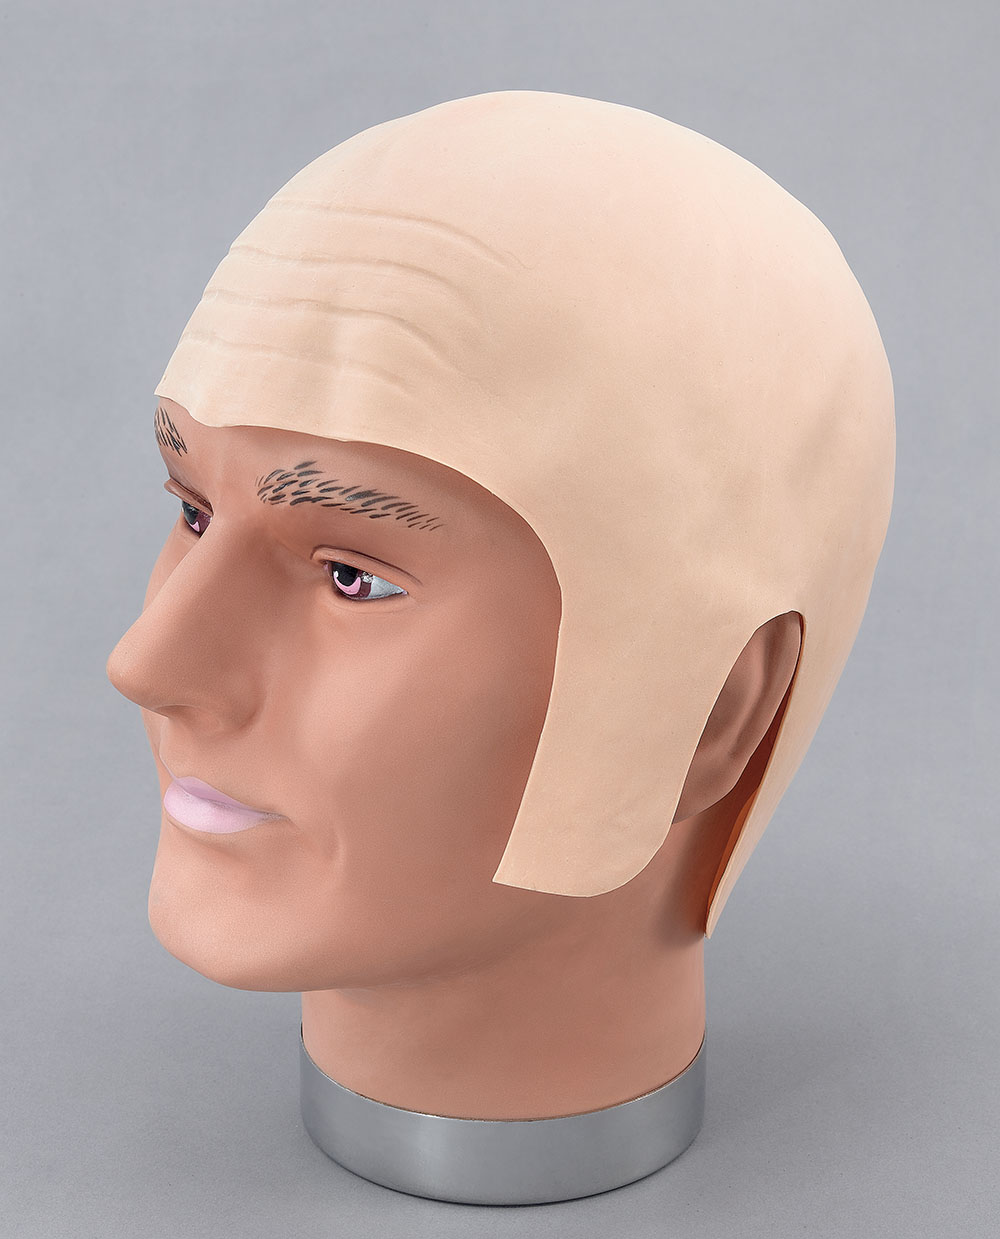 Bald Head Rubber (Realistic)